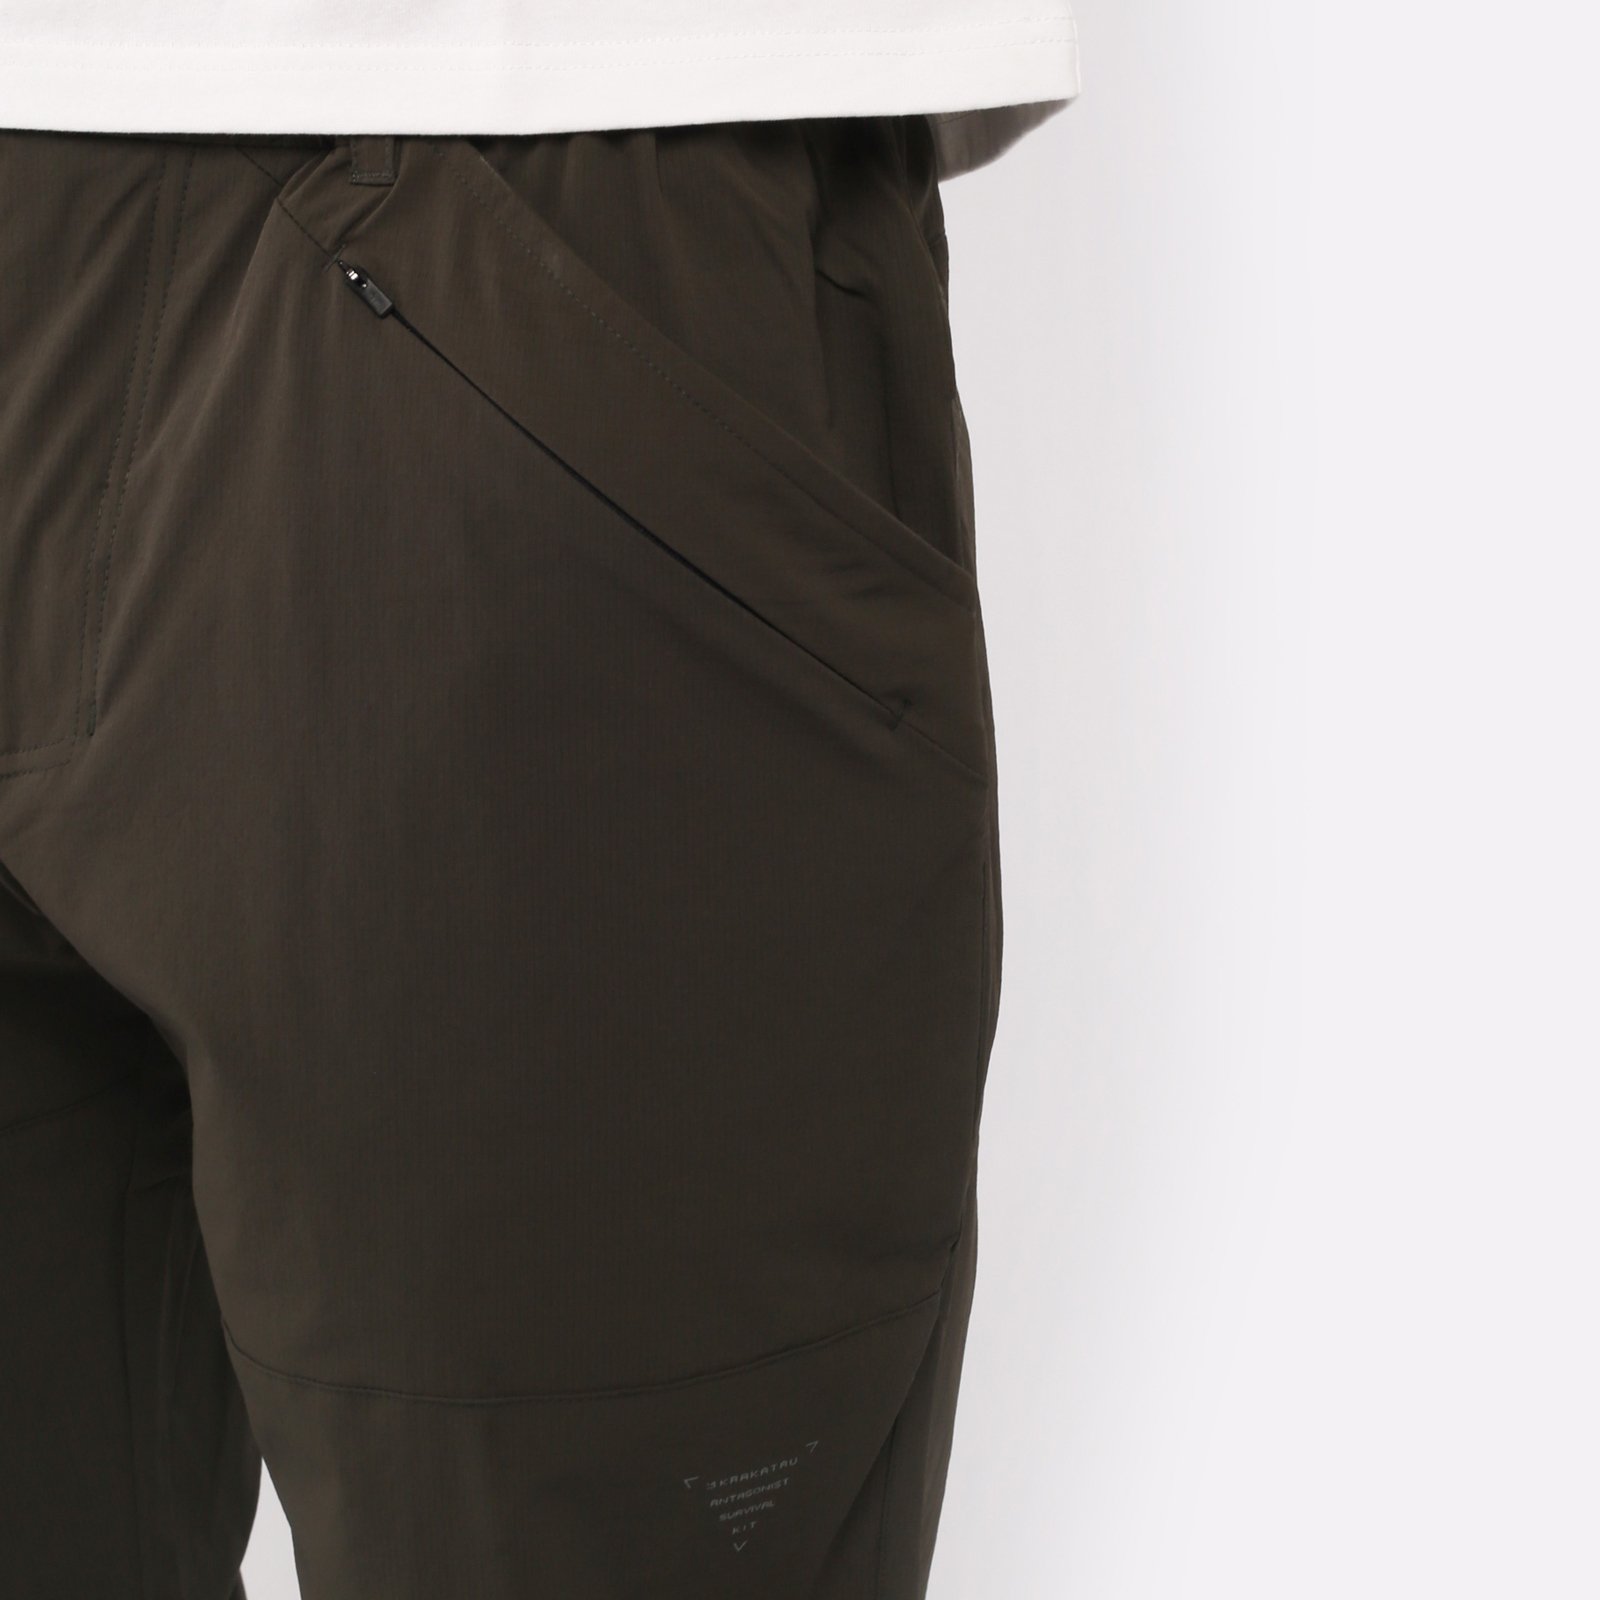 мужские брюки KRAKATAU Rm180-5  (Rm180-5-тем-зел)  - цена, описание, фото 4